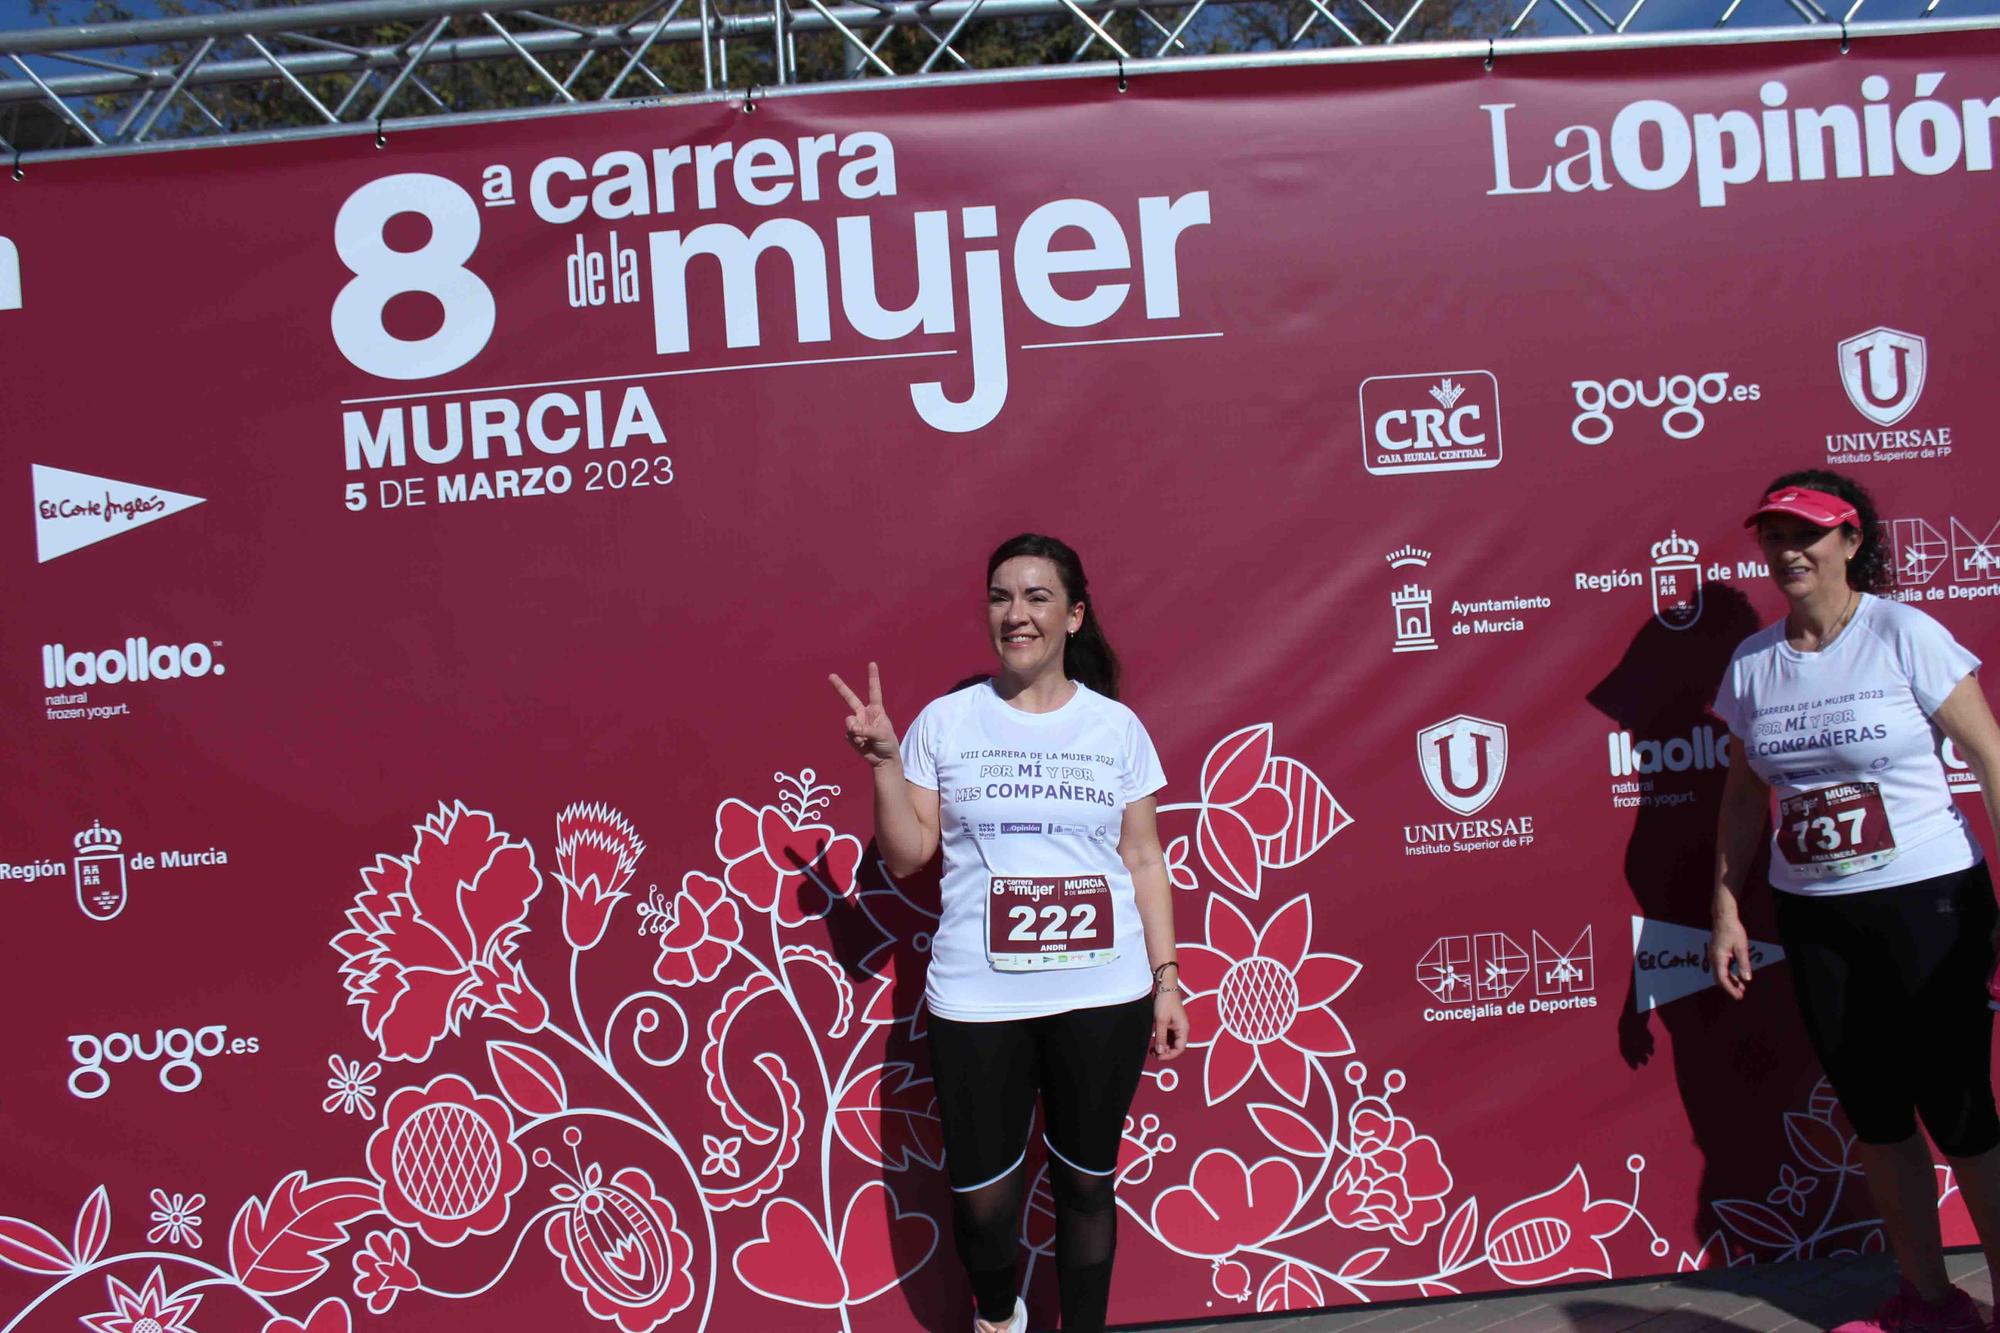 Carrera de la Mujer Murcia 2023: Photocall (2)